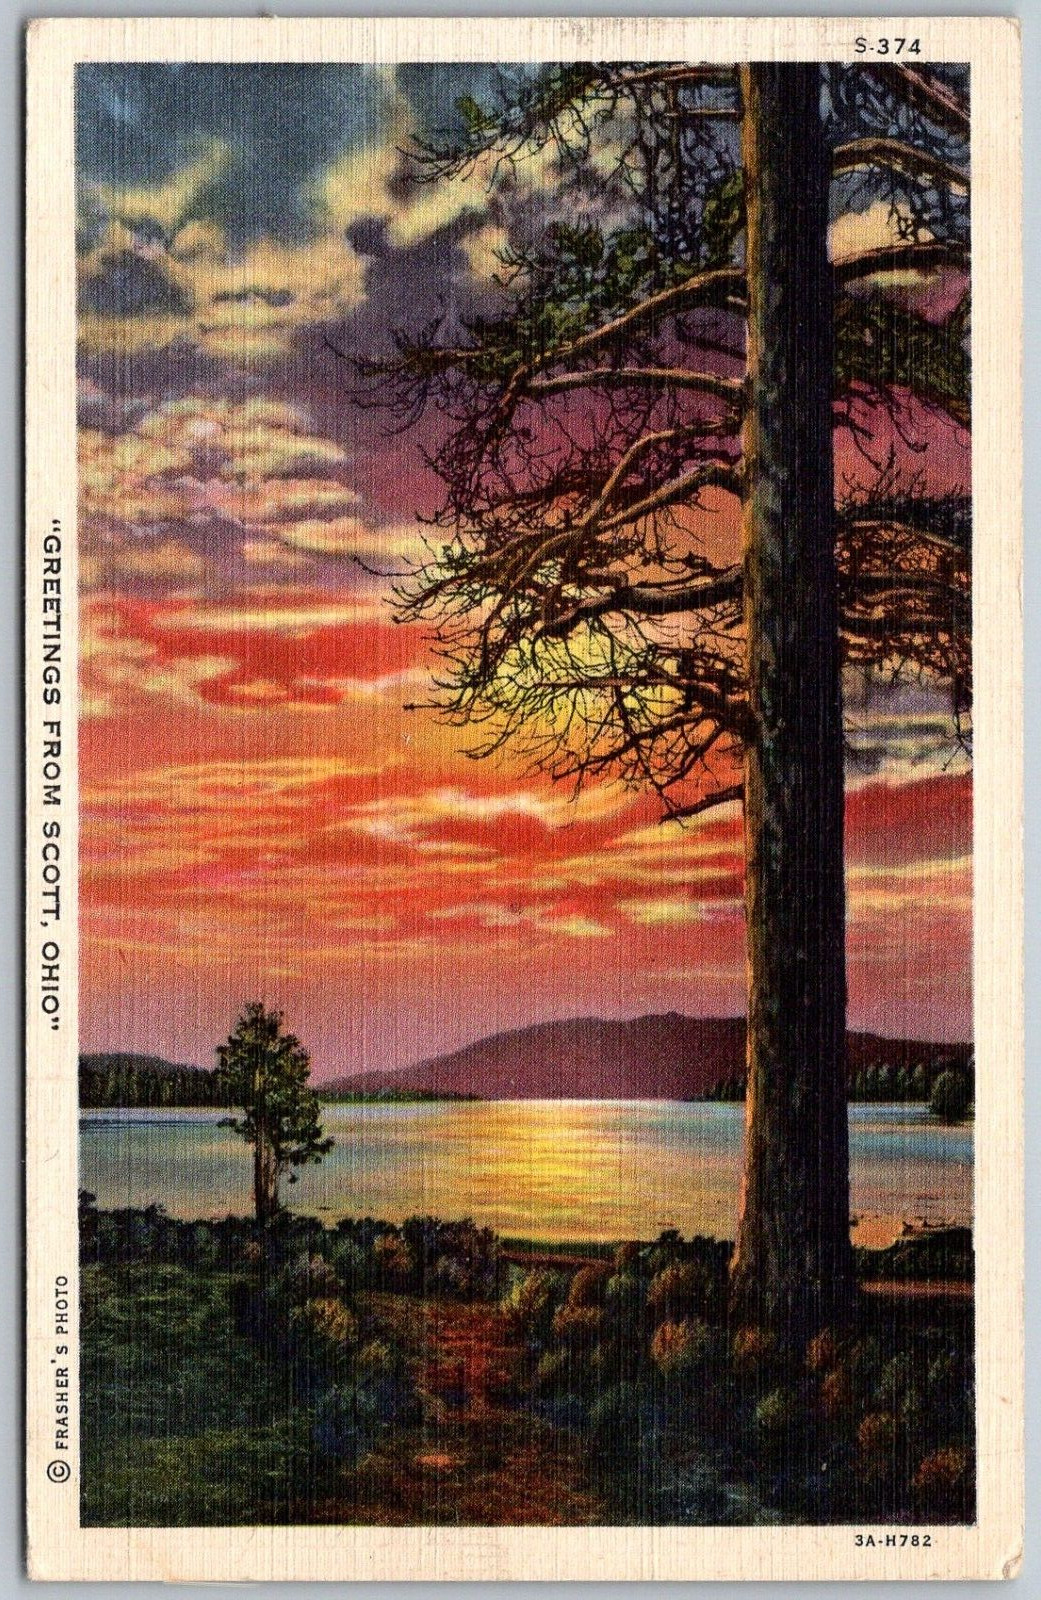 Scott Ohio 1945 Greetings Postcard Sunset Lake Trees